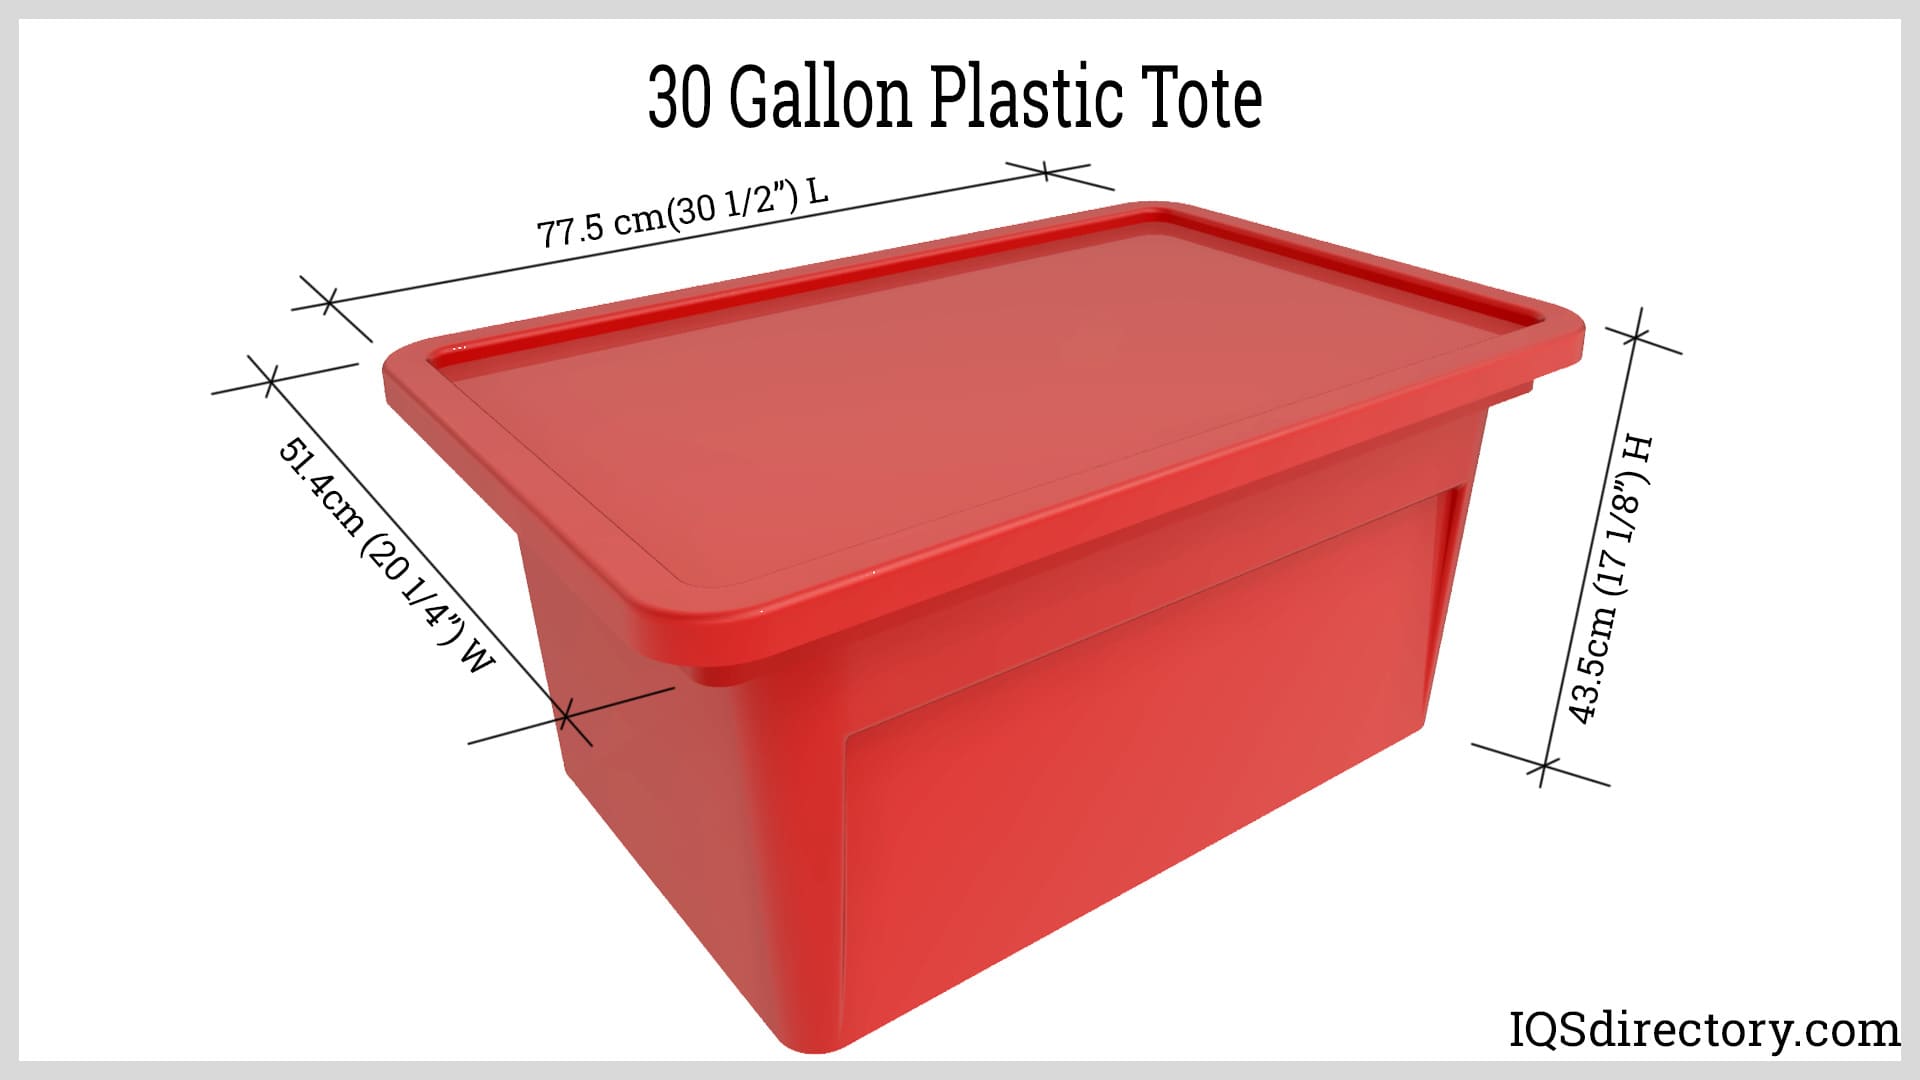 30 Gallon Plastic Tote